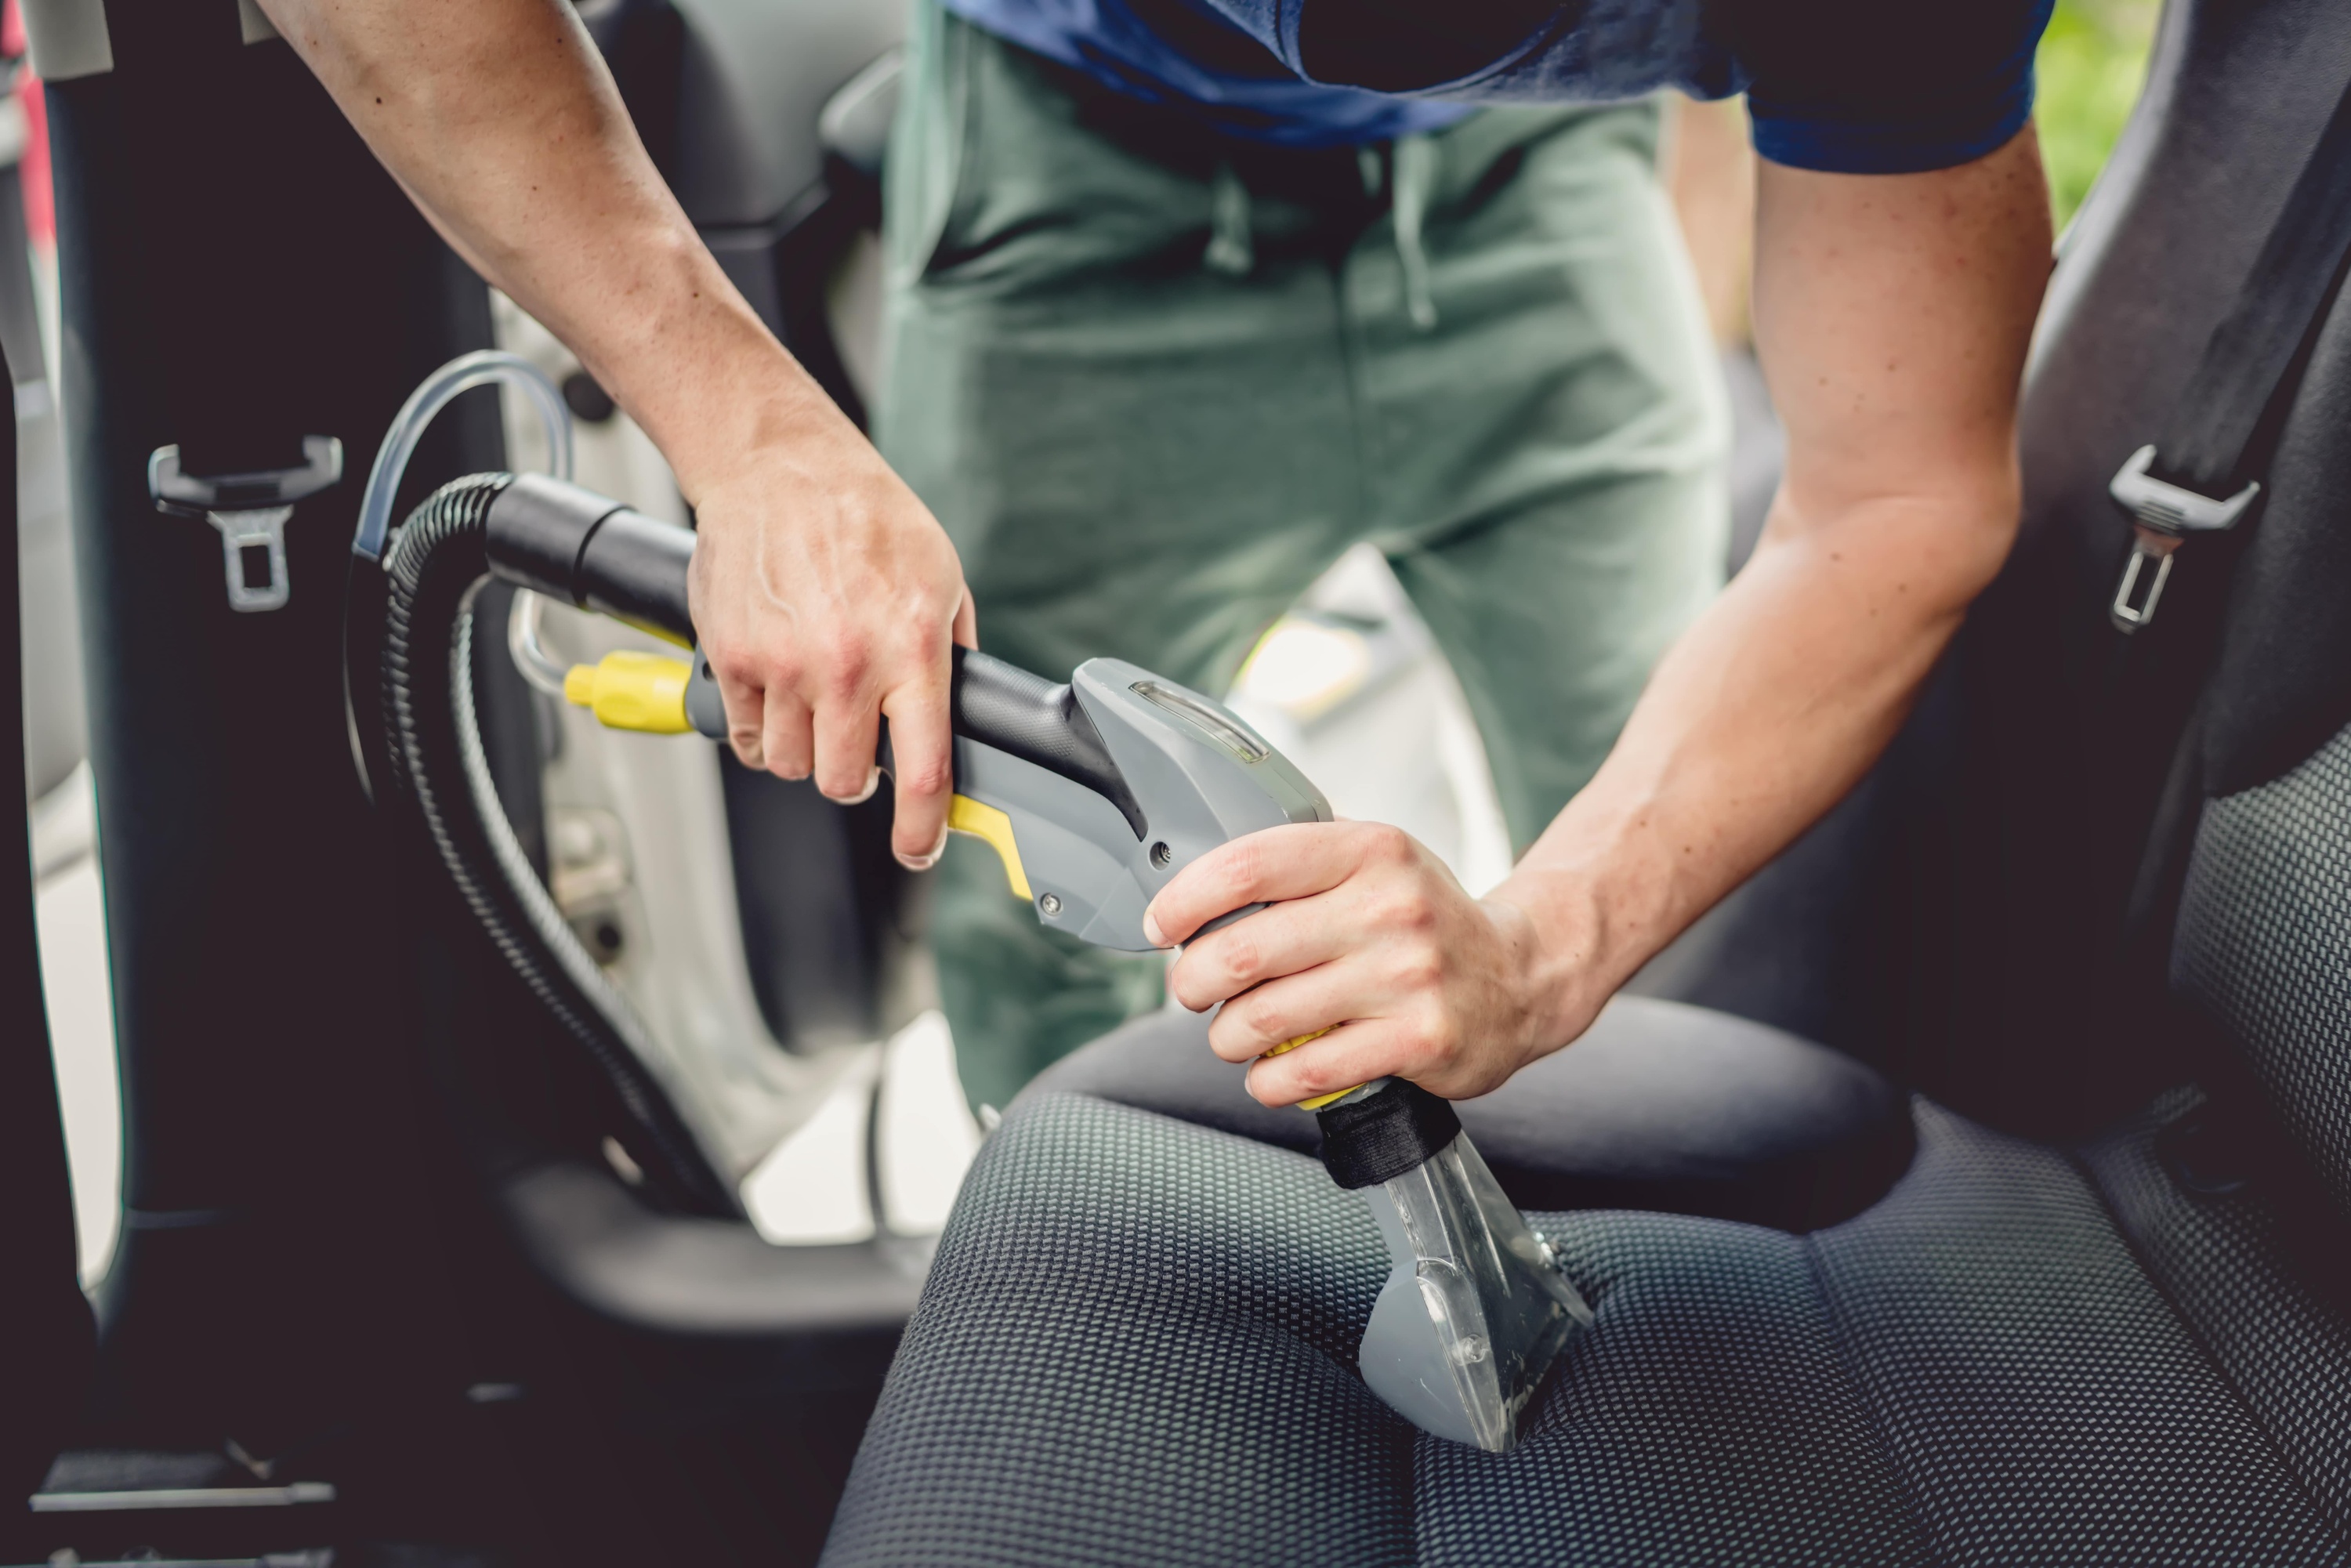 Come pulire interni e sedili dell'auto? La lavamoquette è essenziale- Würth  News